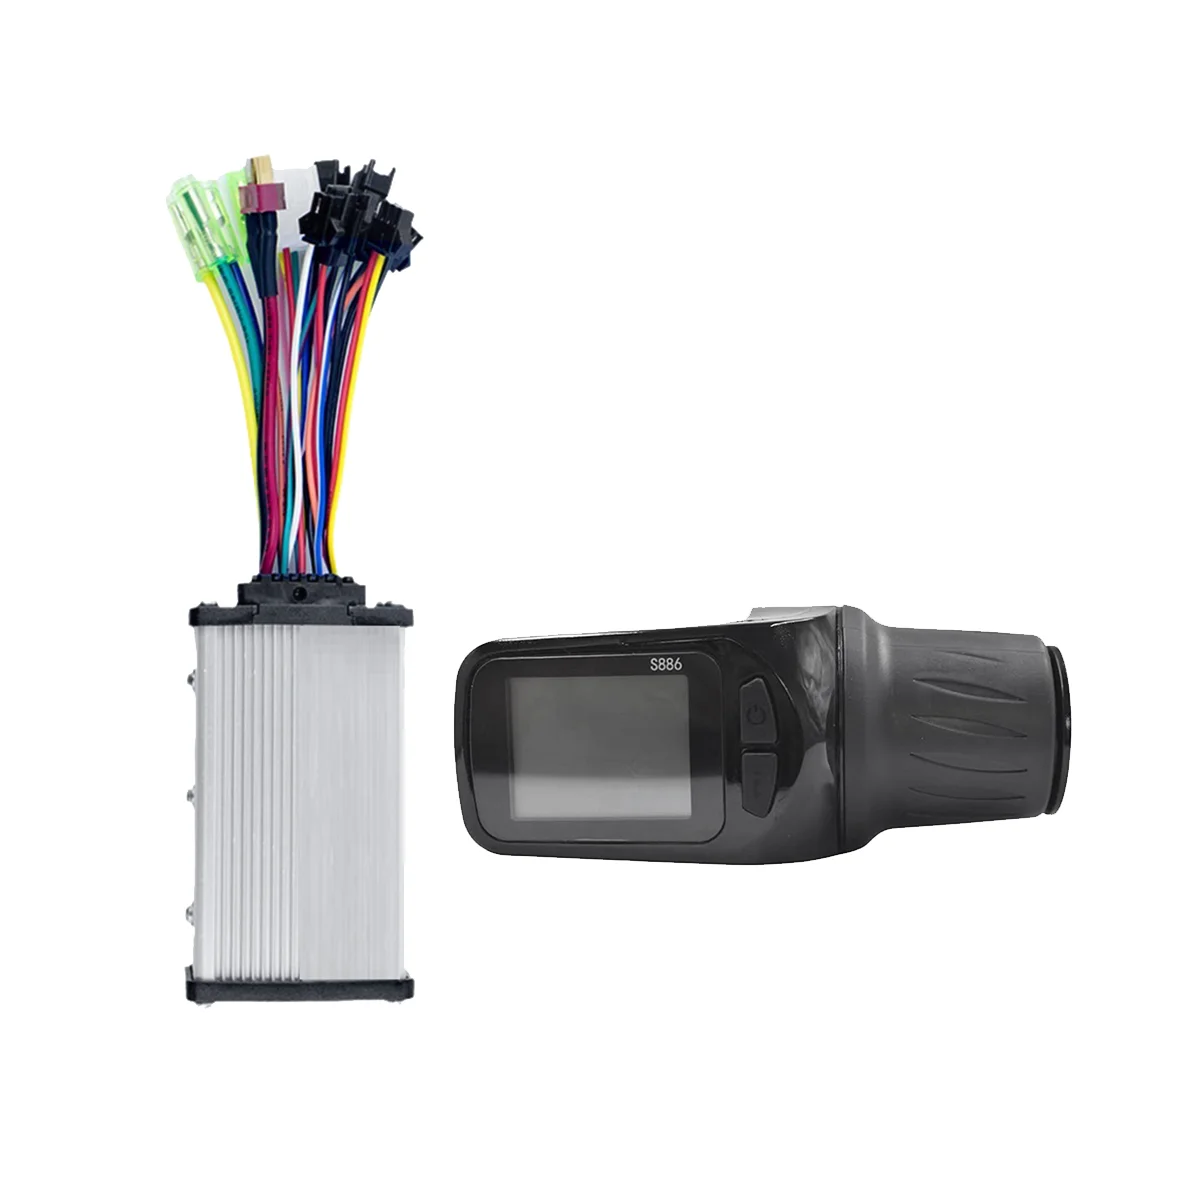 

ЖК-дисплей для электровелосипеда S886, 24 В, 36 В, 48 В, 60 В, регулировка с поворотной дроссельной заслонкой + контроллер синусоидальной волны 36 В, 350 Вт для электроскутера 5PIN